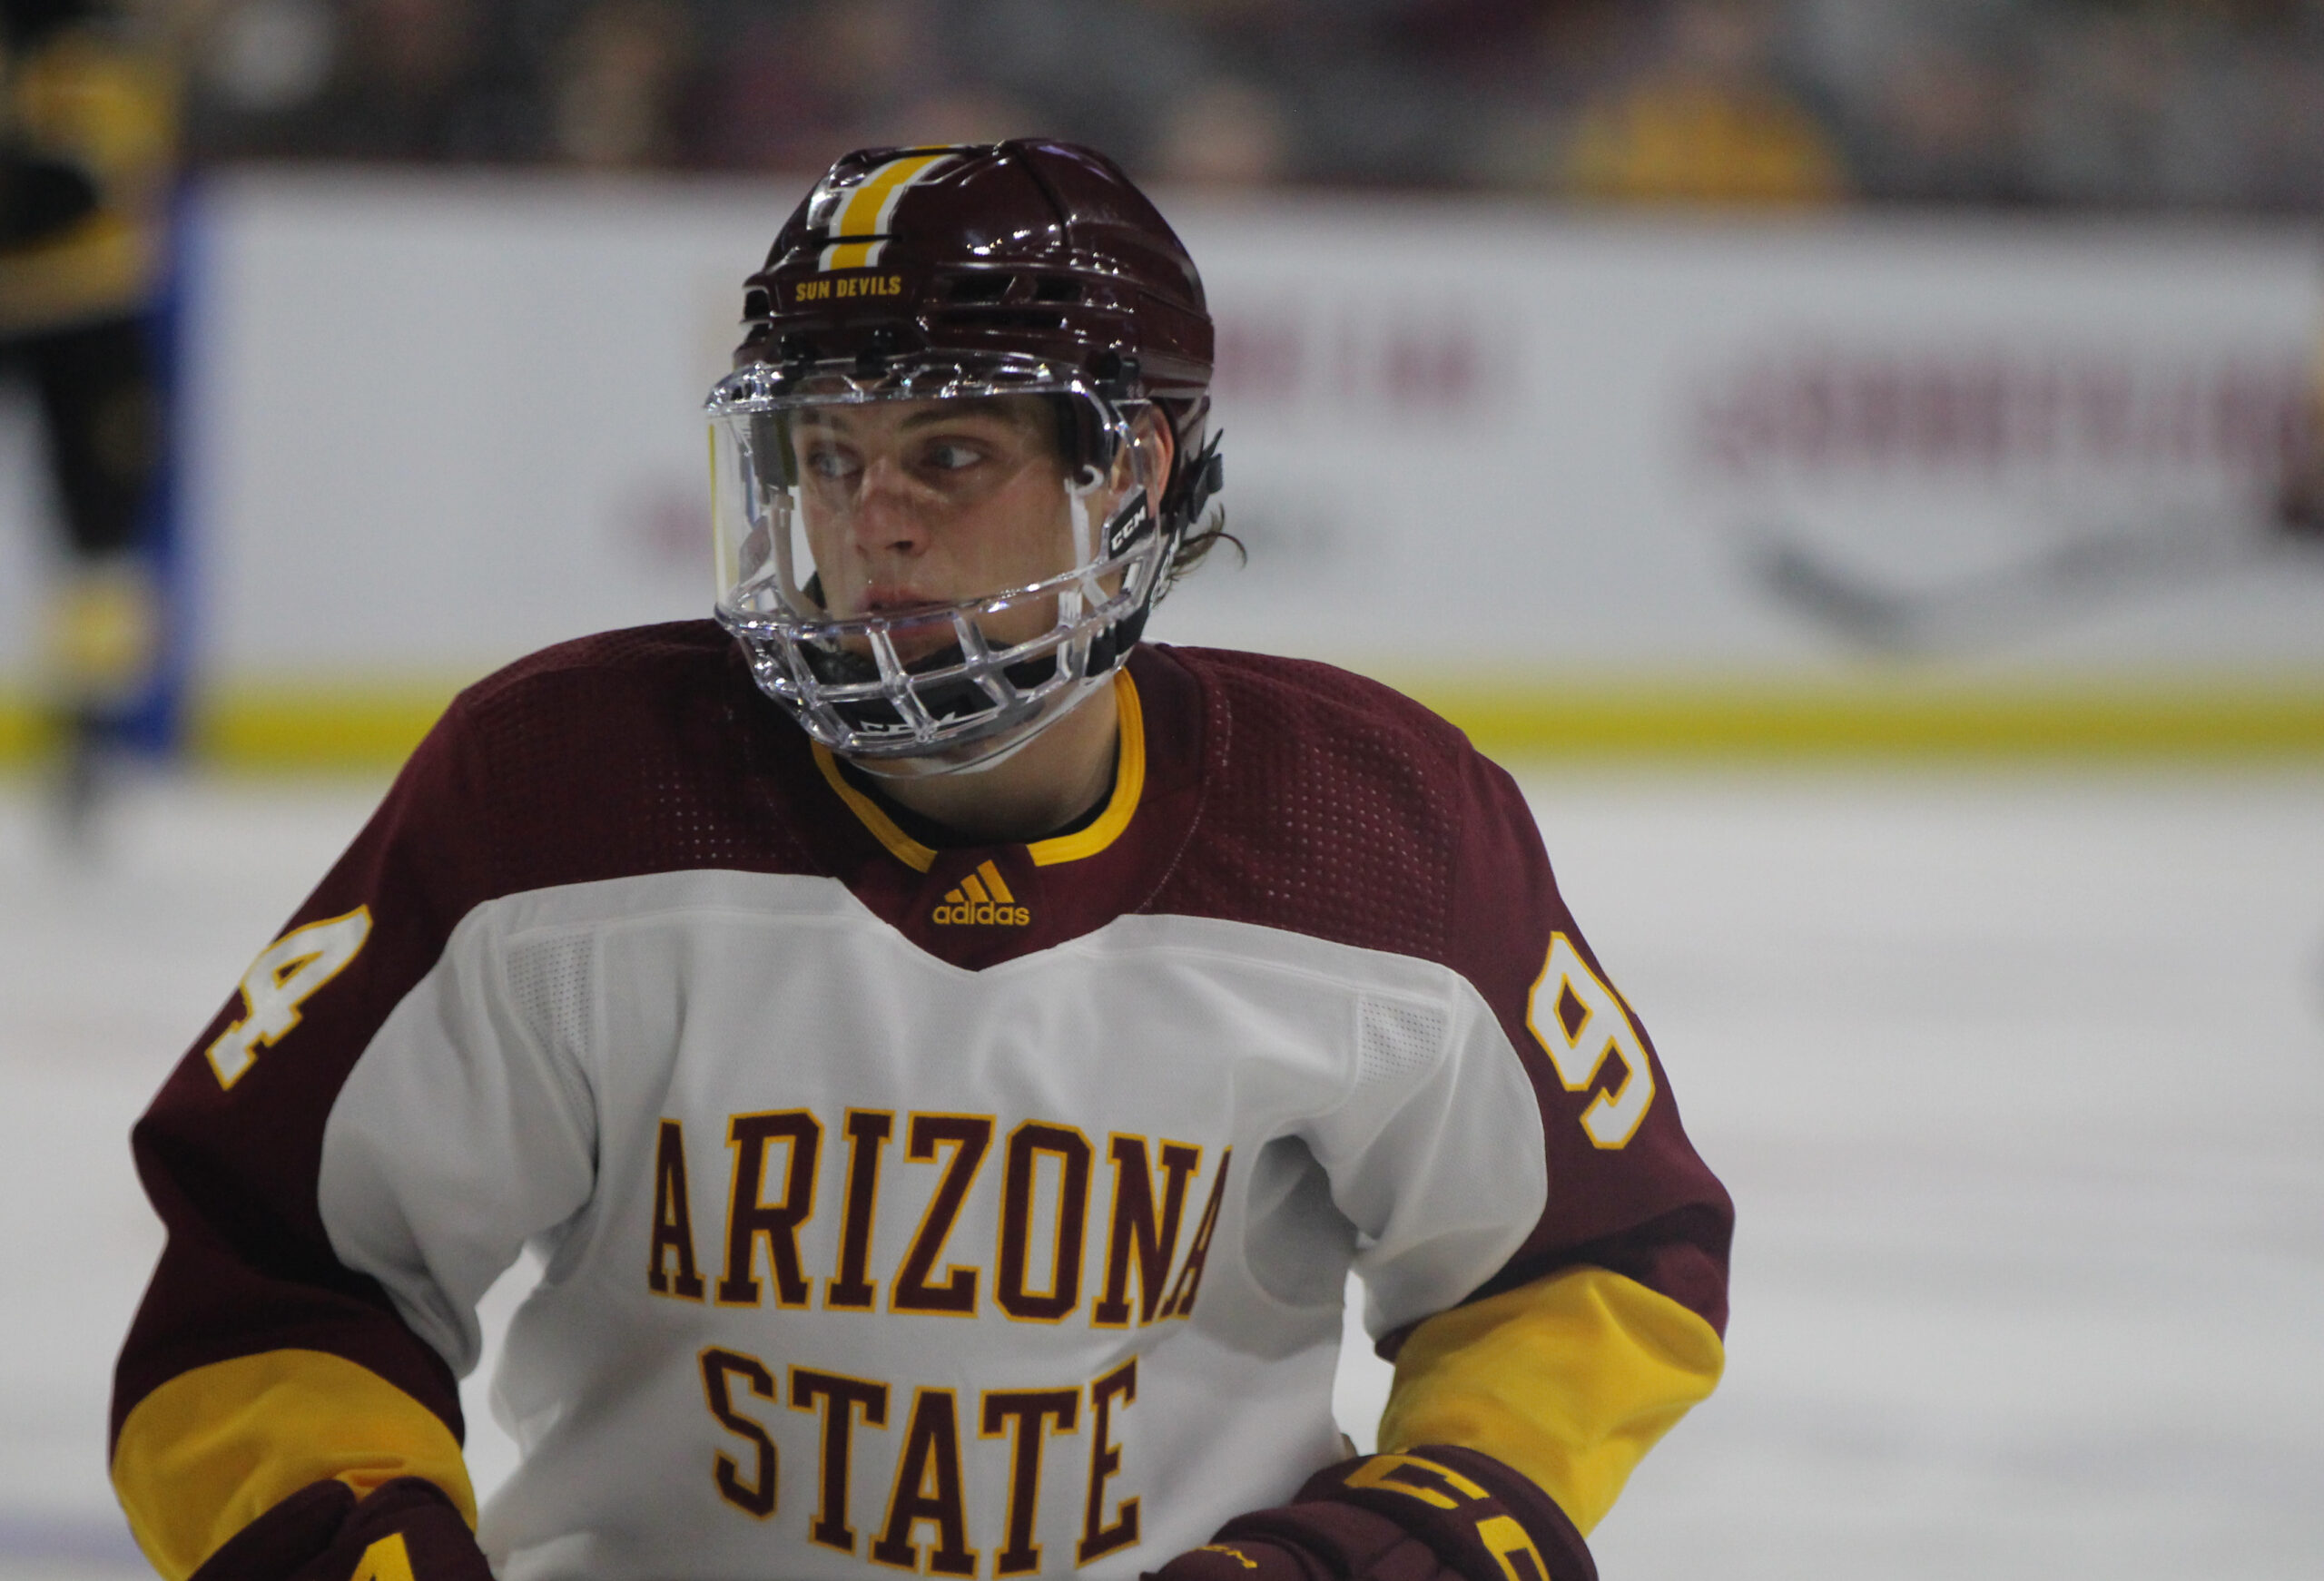 Ice Hockey - Arizona State University Athletics